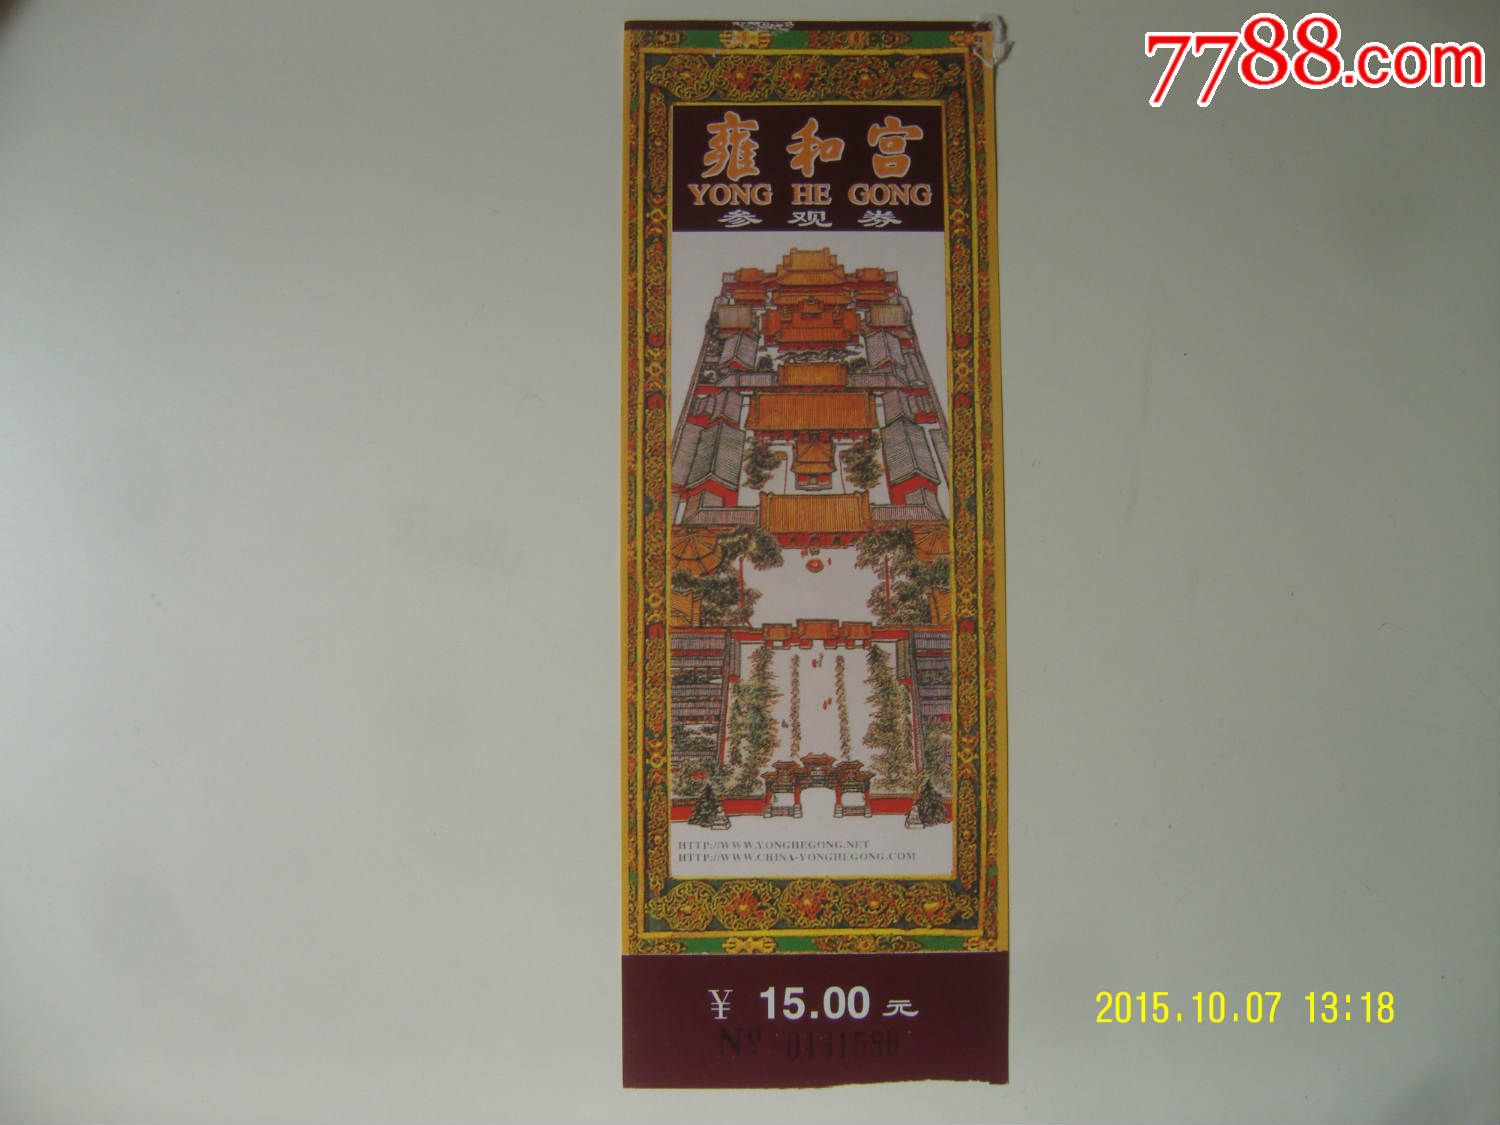 雍和宫门票-价格:1.8元-se32640288-旅游景点